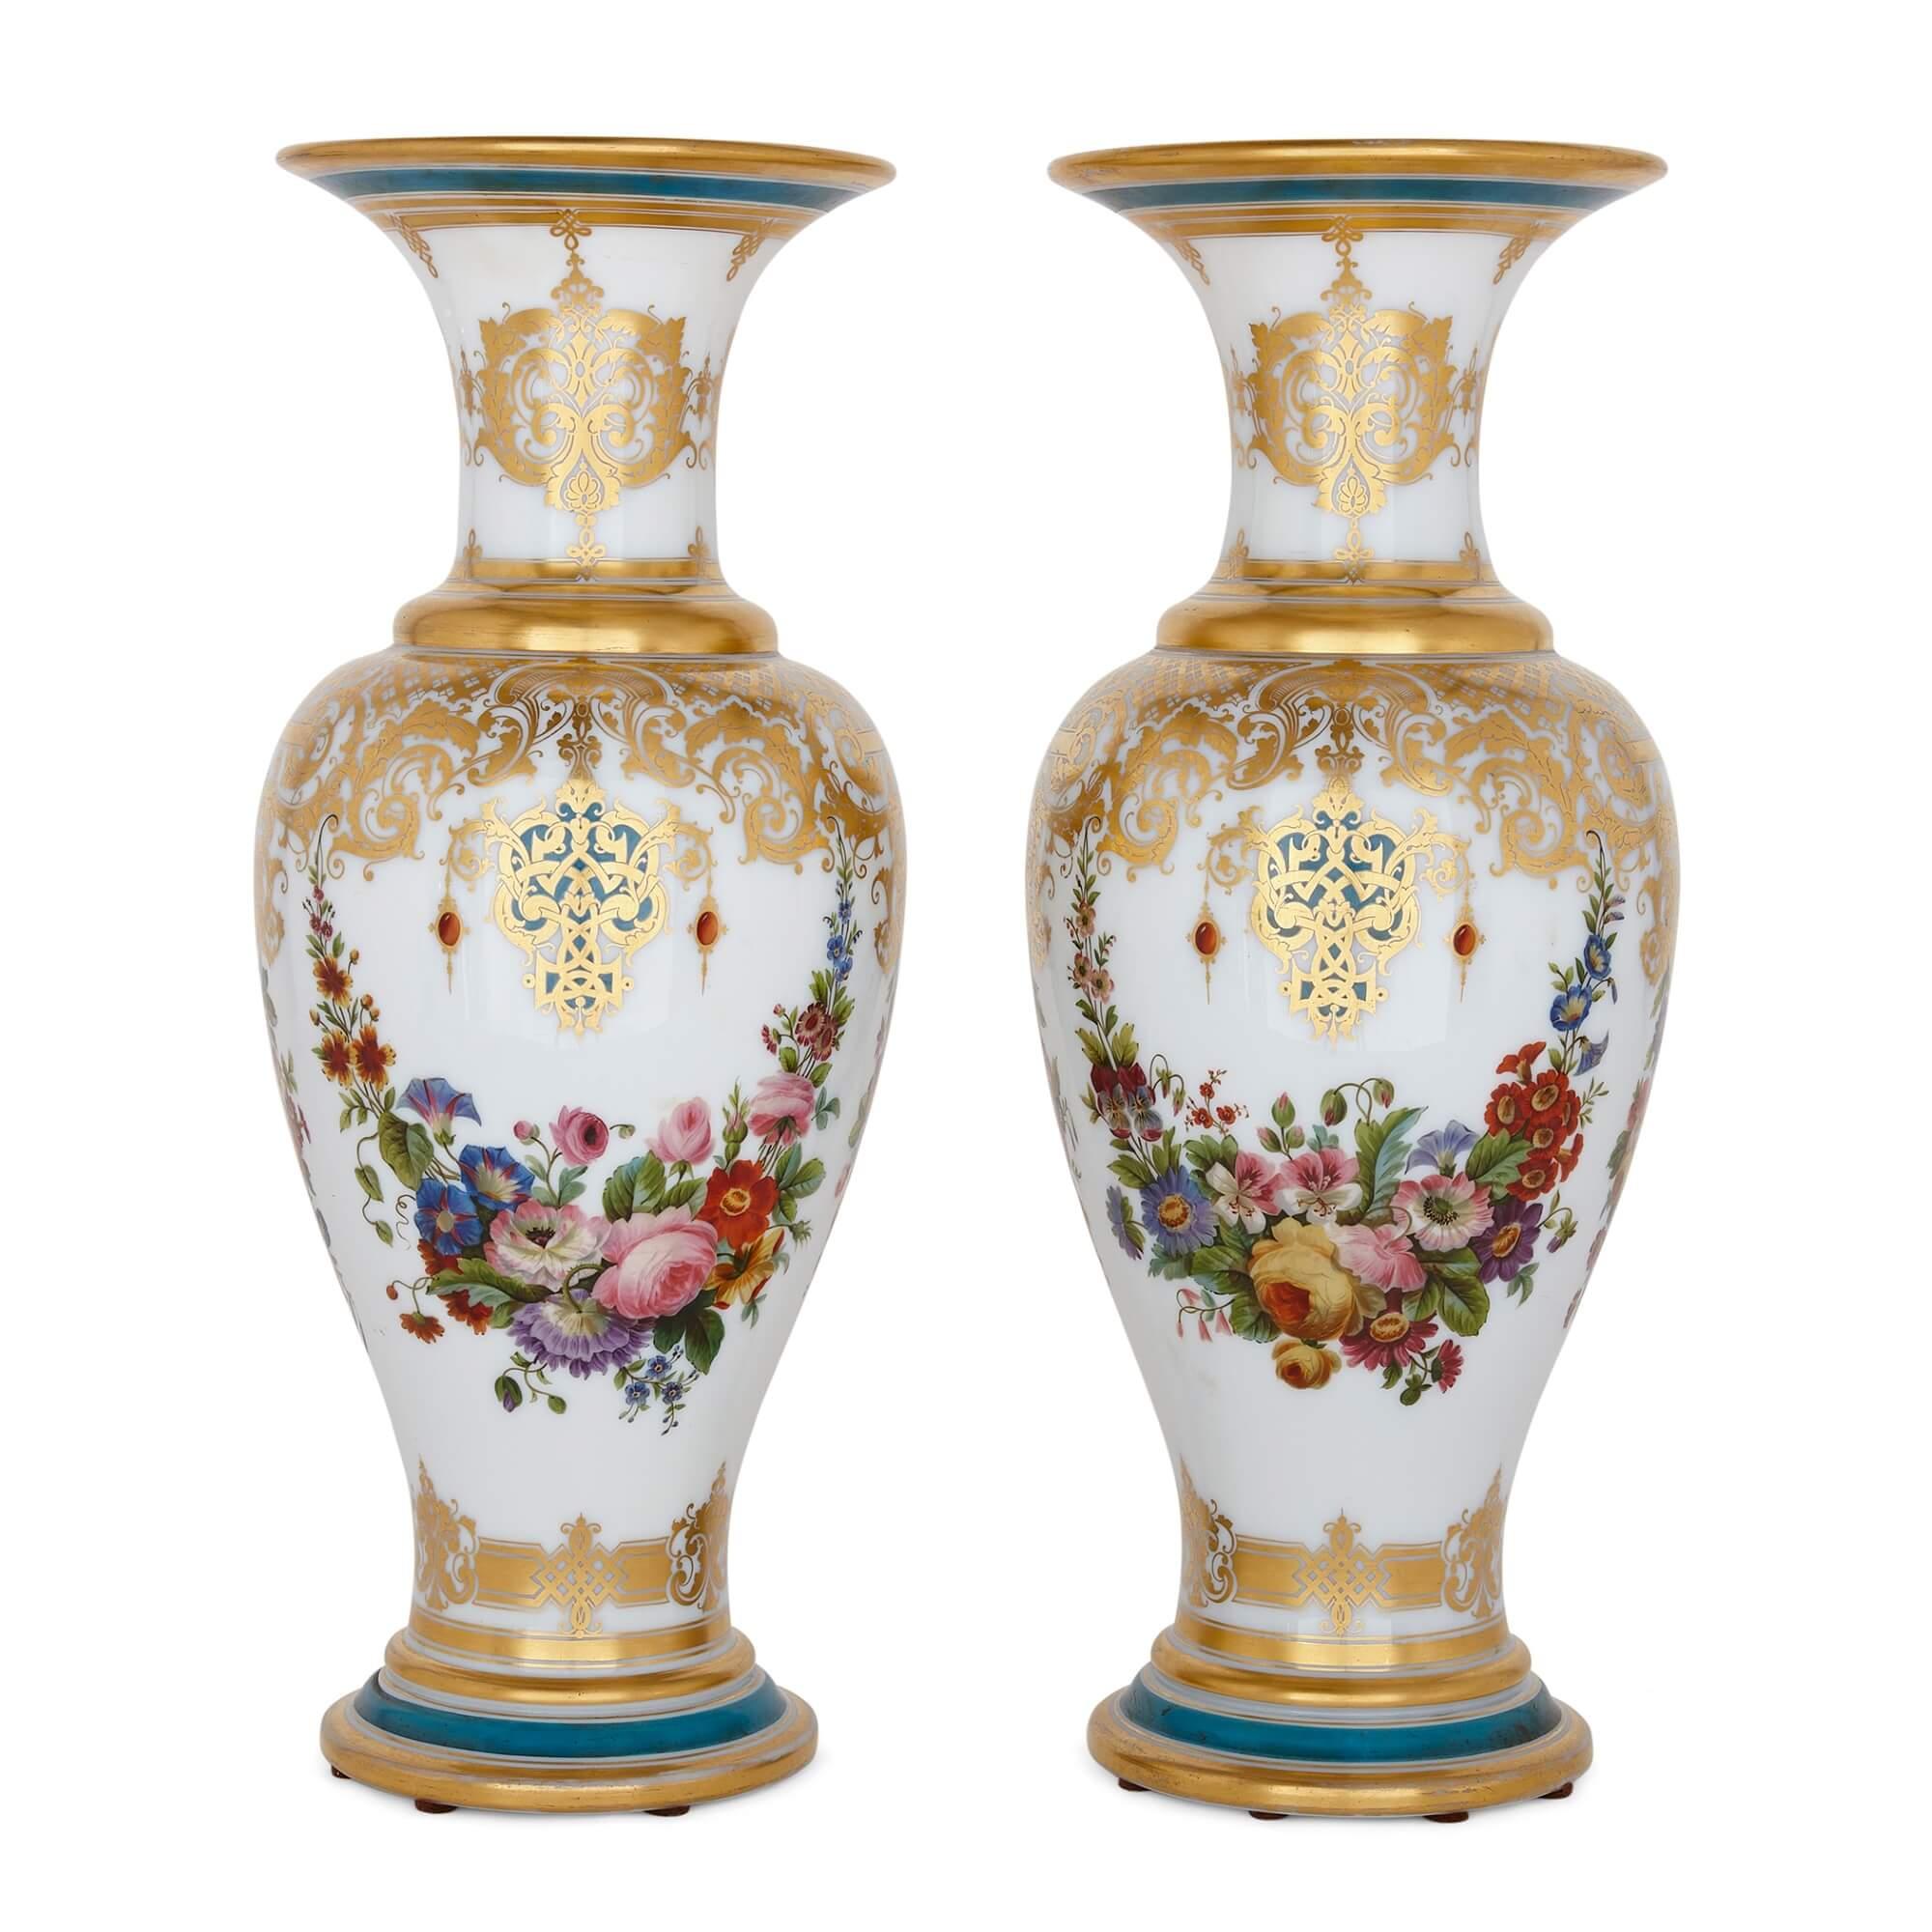 Paar bemalte und paketvergoldete Opalglasvasen von Baccarat
Französisch, um 1850
Höhe 51cm, Durchmesser 21cm

Dieses Vasenpaar wurde um 1850 von der berühmten Firma Baccarat in Frankreich hergestellt und weist eine Reihe von Ornamenten im